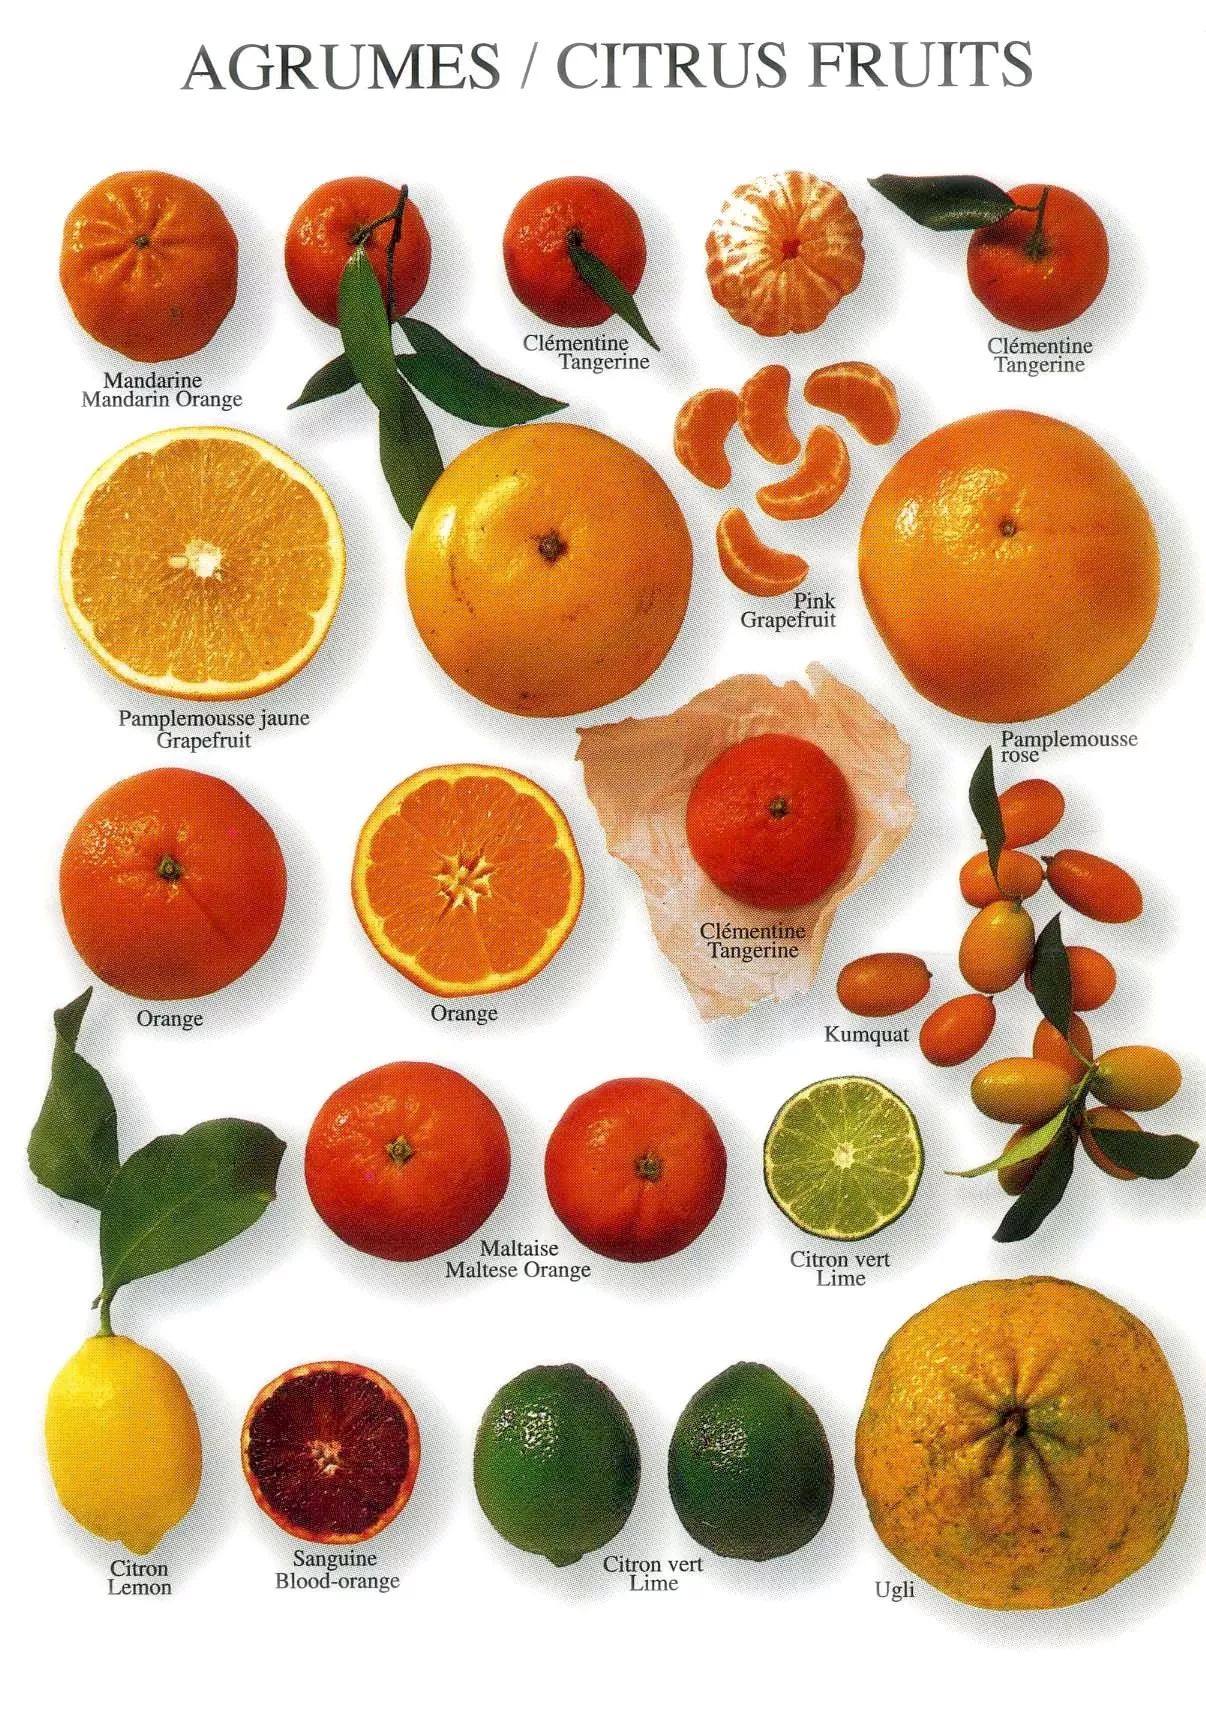 特色果树：软枣猕猴桃，营养价值极高 被称为超级水果 第三代水果之王